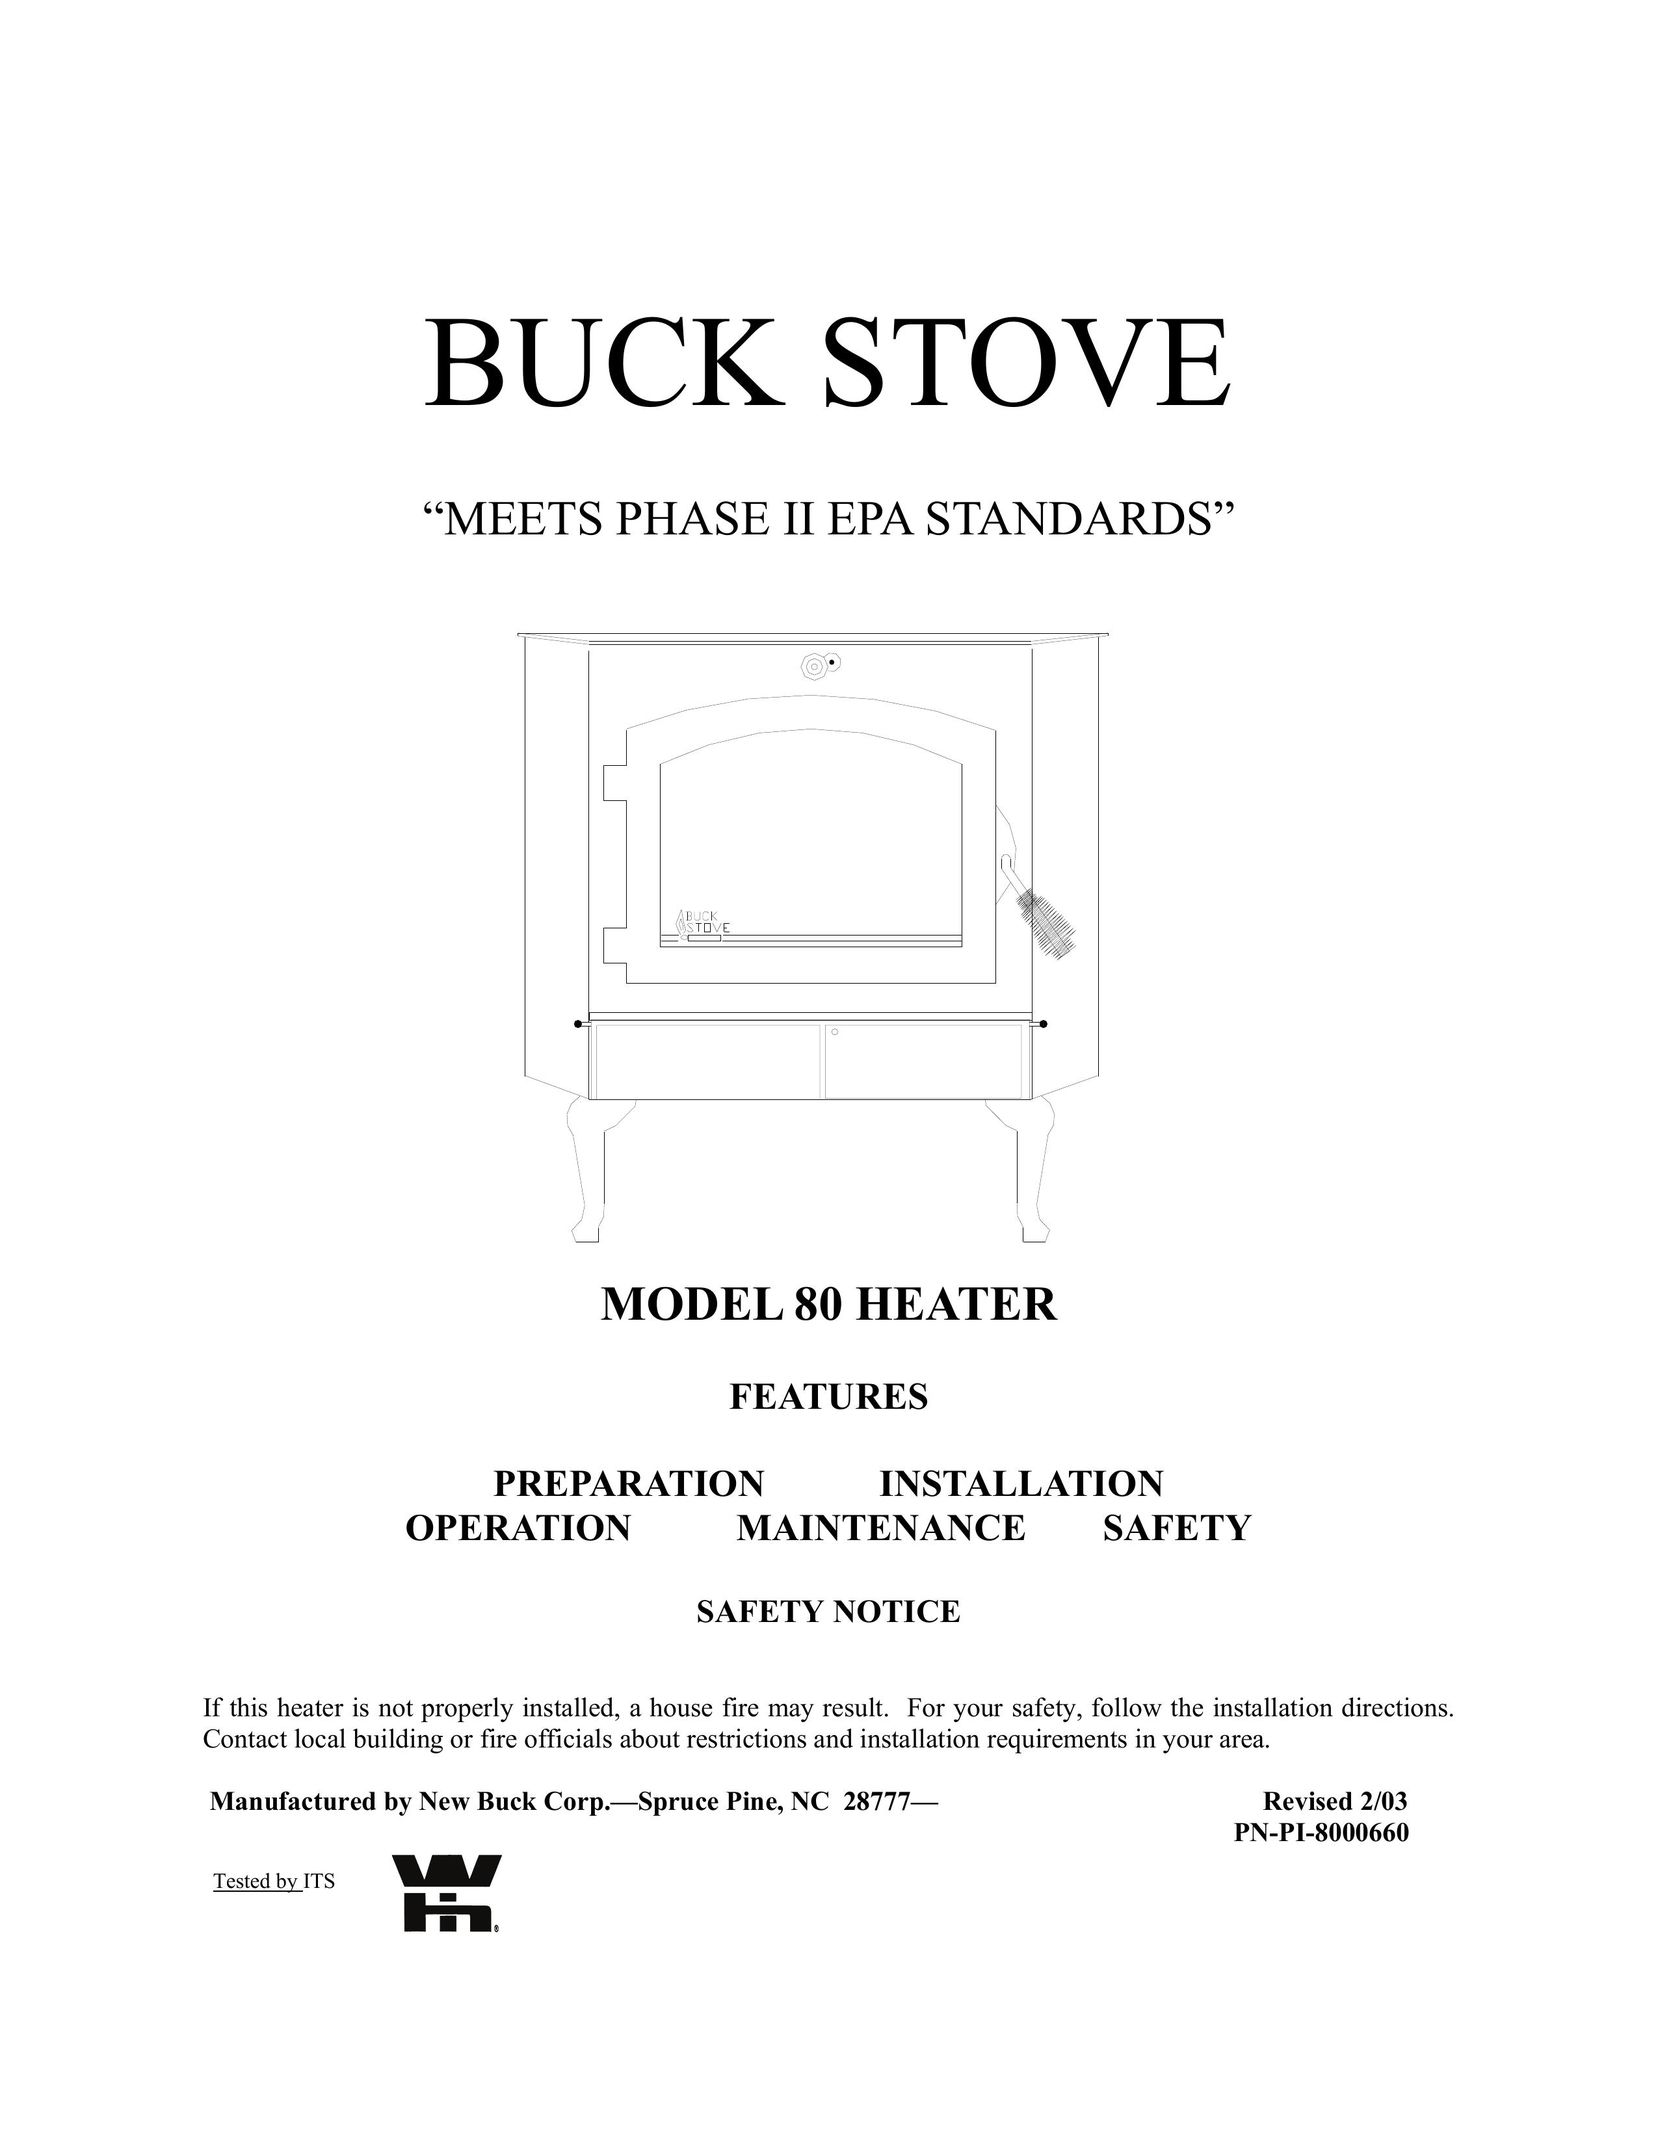 New Buck Corporation Heater Model 80 Fan User Manual